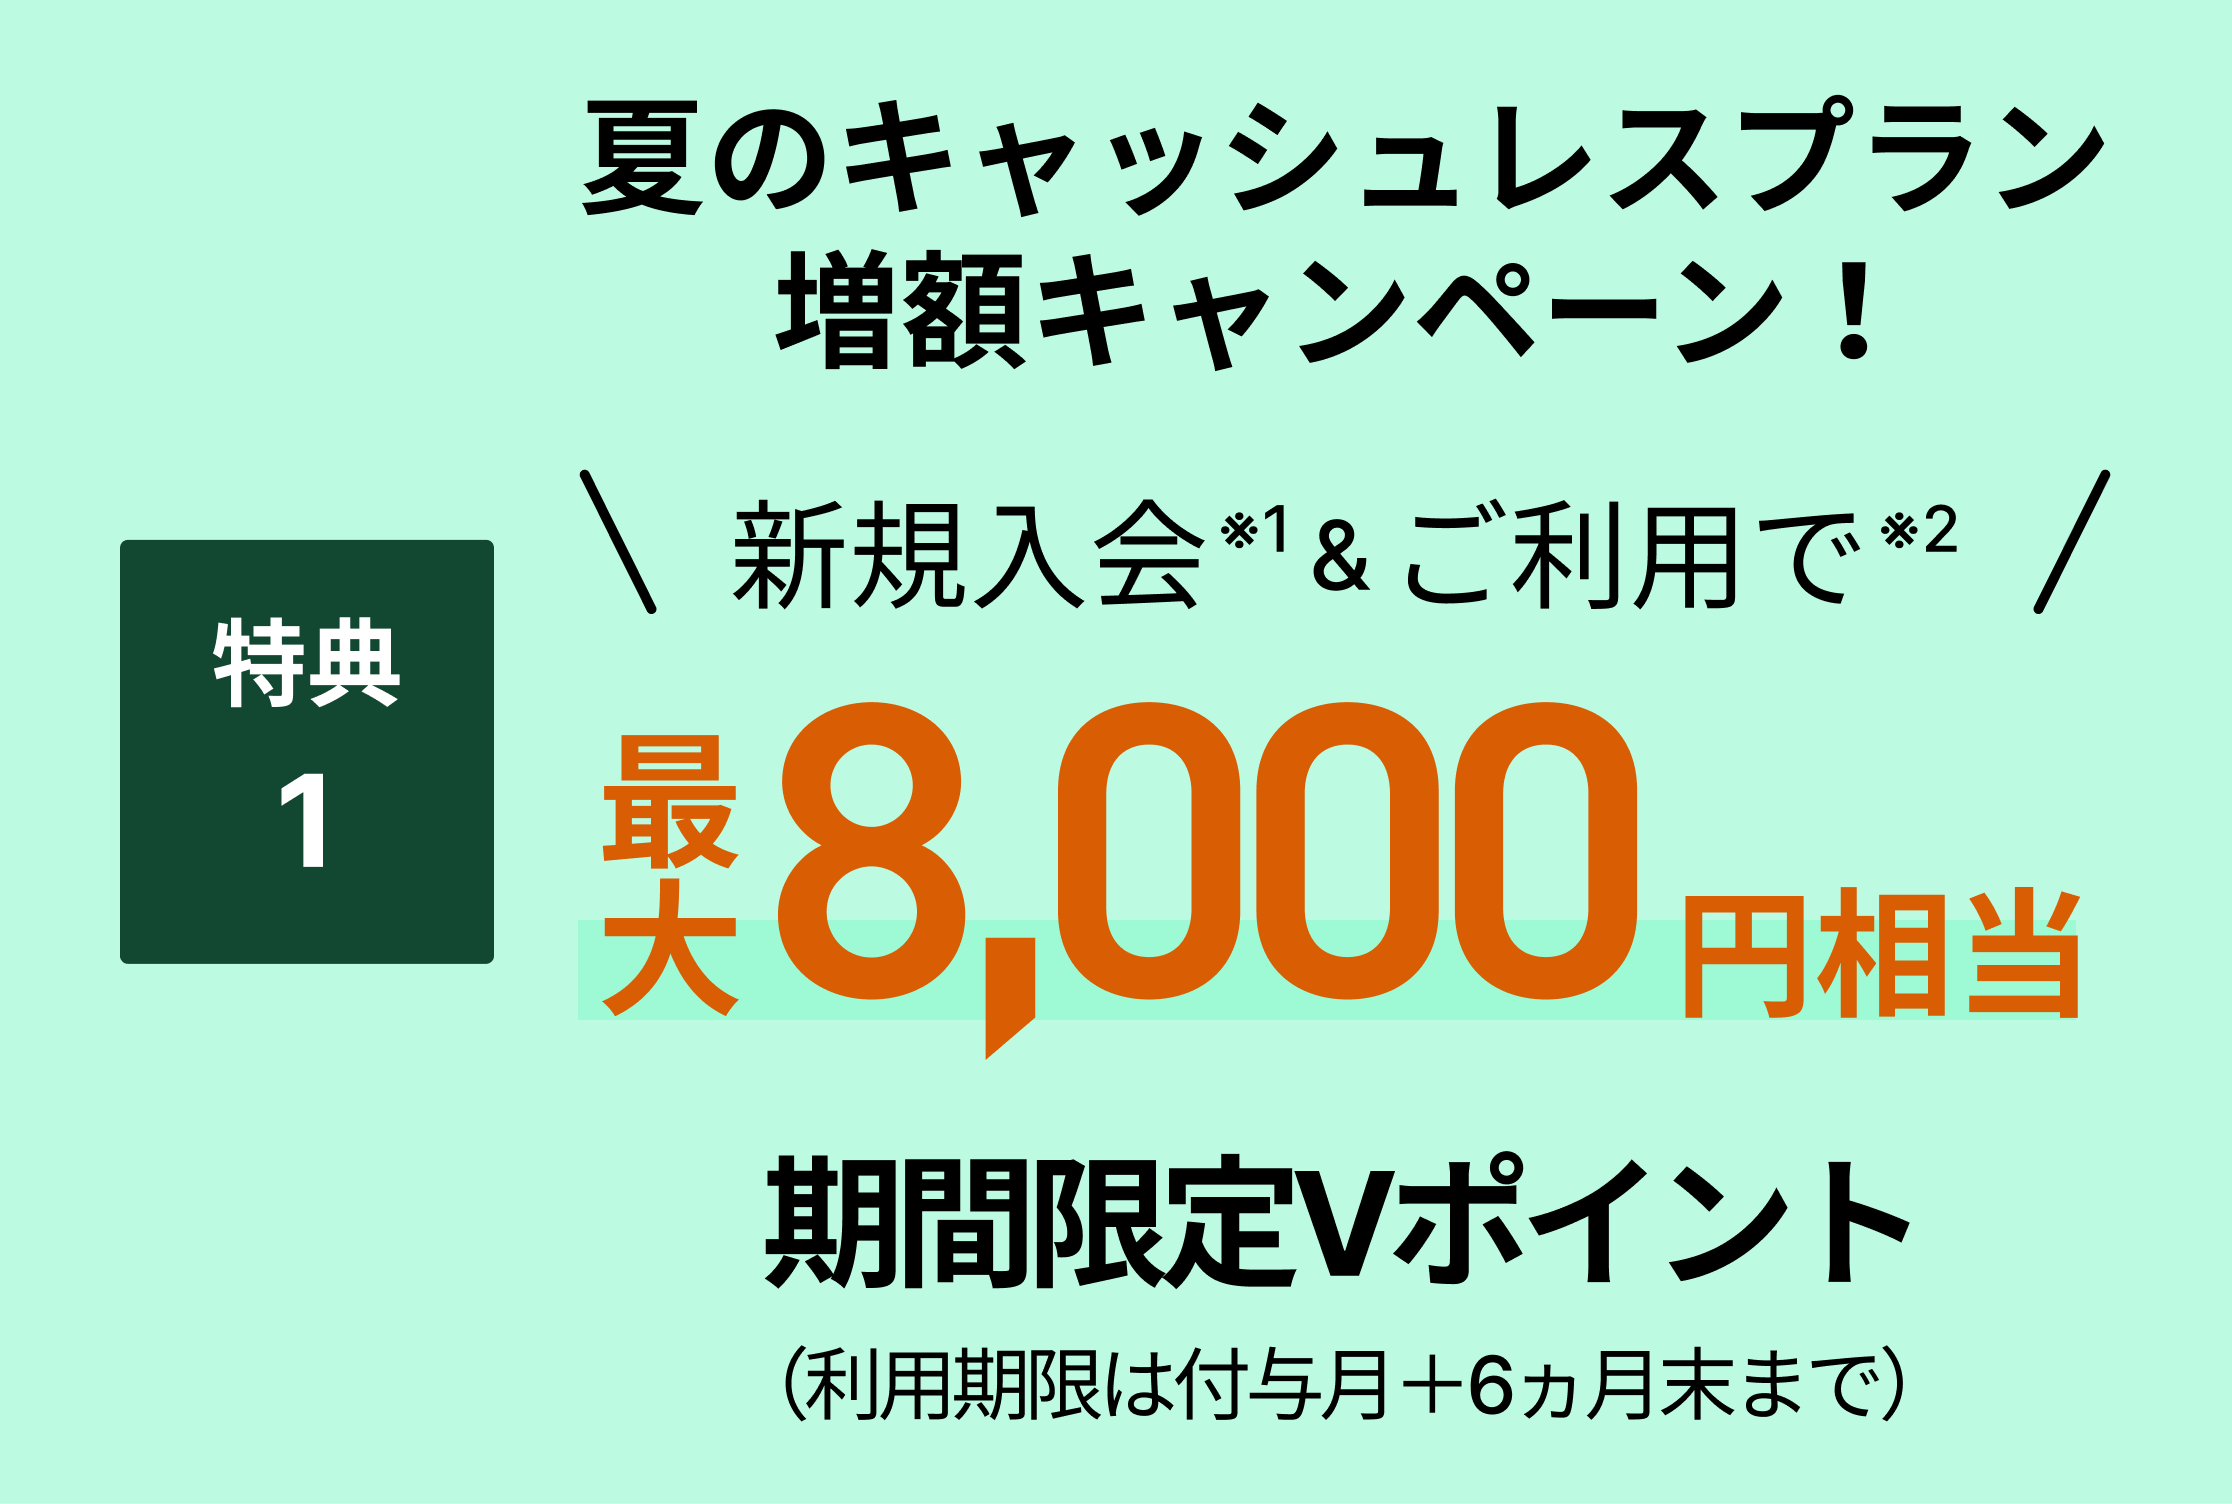 特典1キャッシュレスプラン増額キャンペーン最大8,000円相当プレゼント！